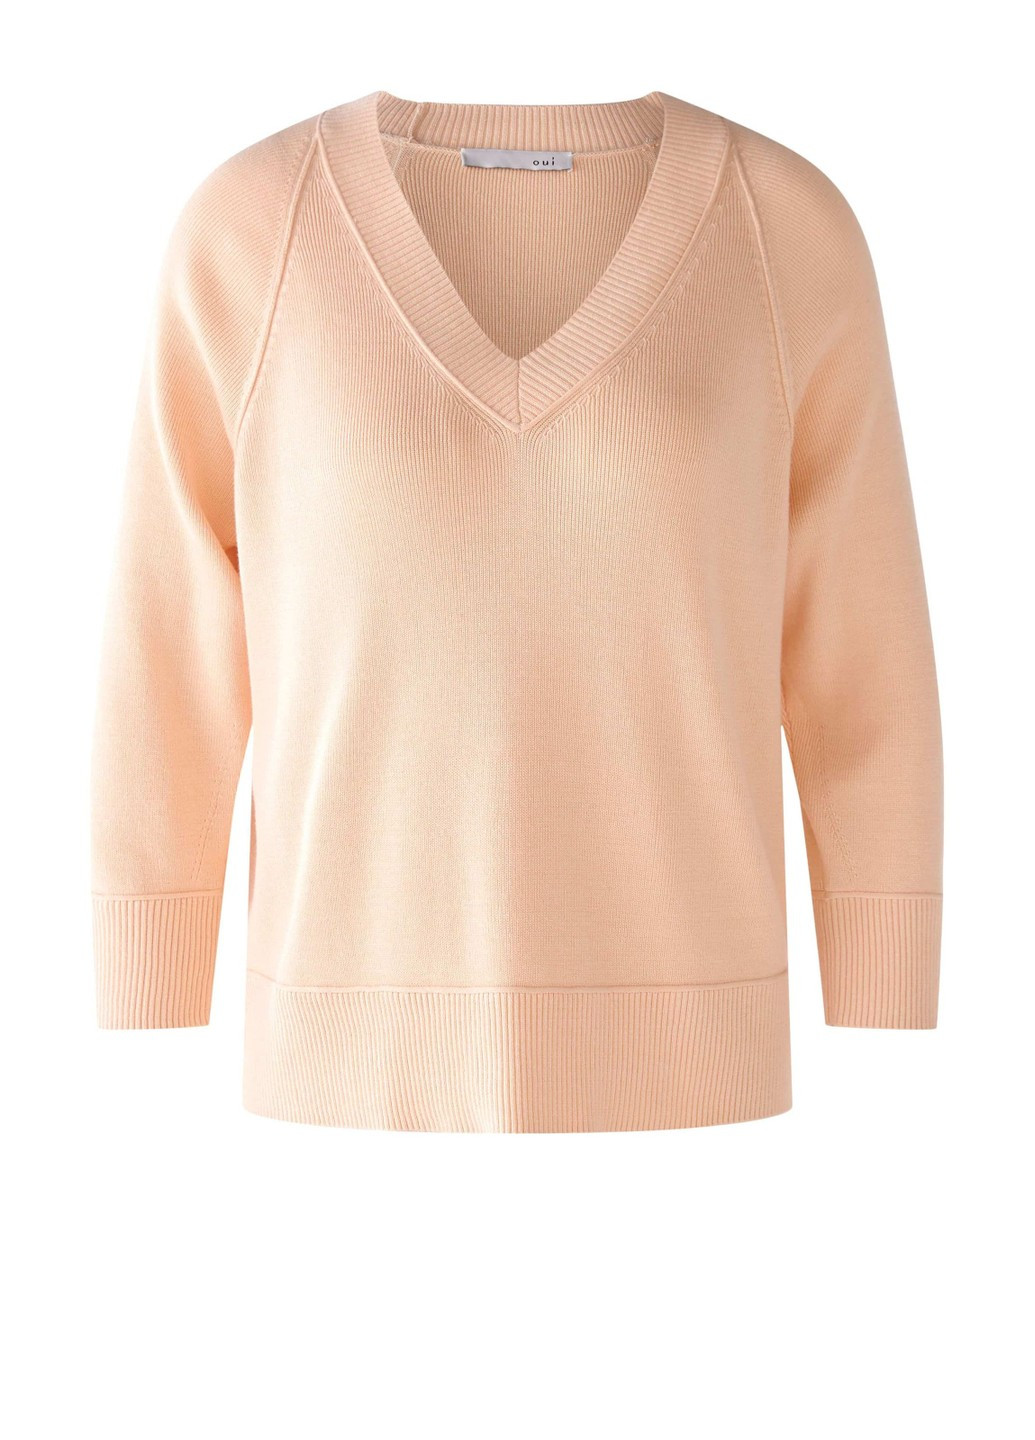 Персиковый демисезонный женский пуловер персиковый пуловер Oui